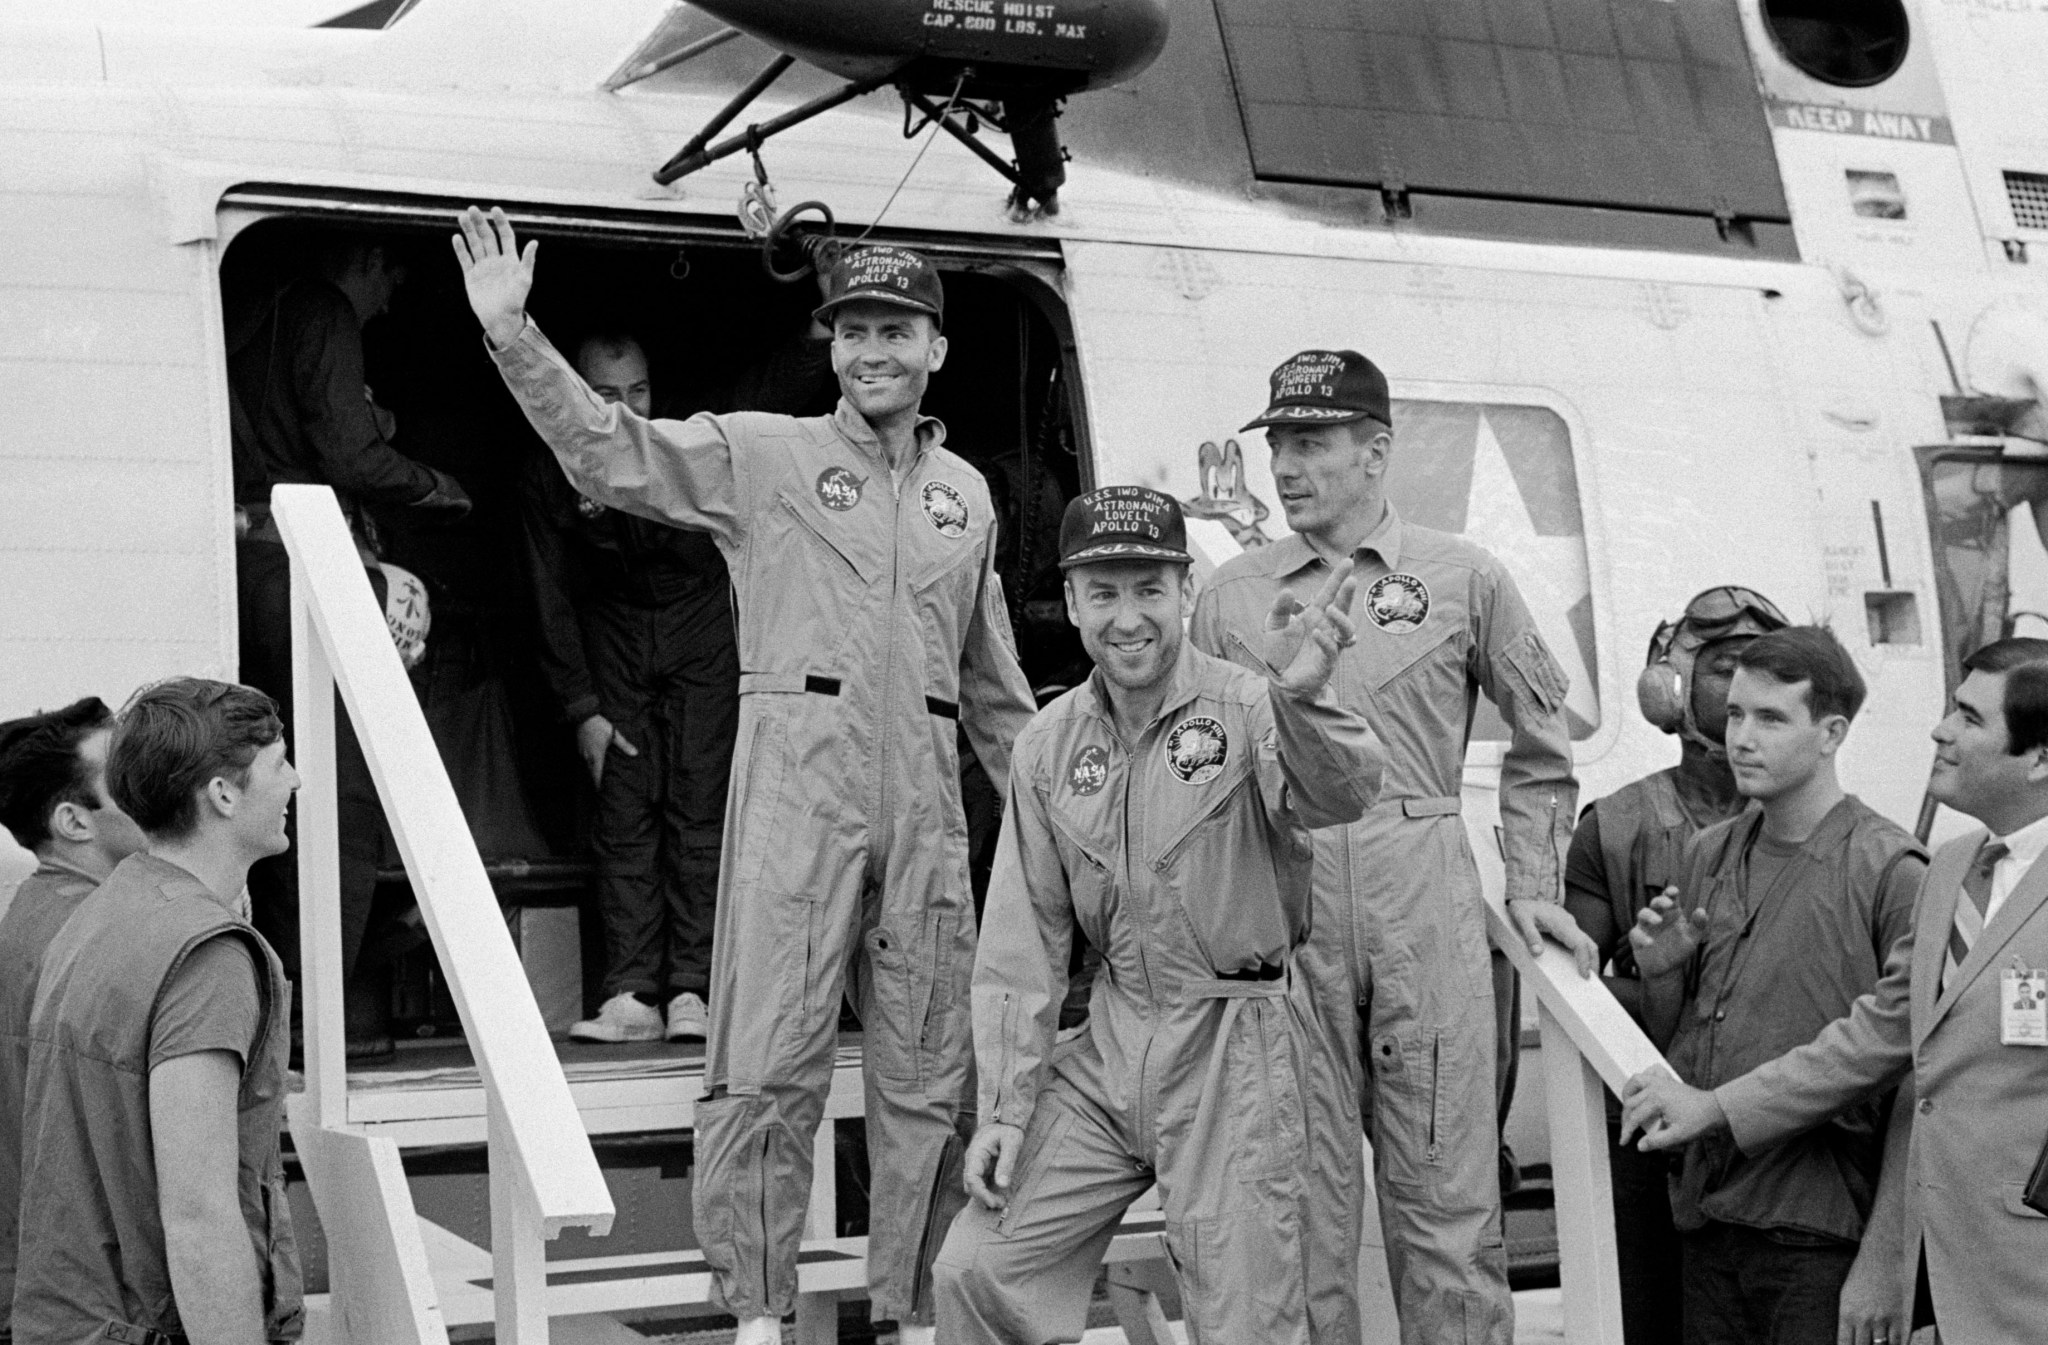 Three Apollo 13 crew members in flight suits wave while aboard USS Iwo Jima ship